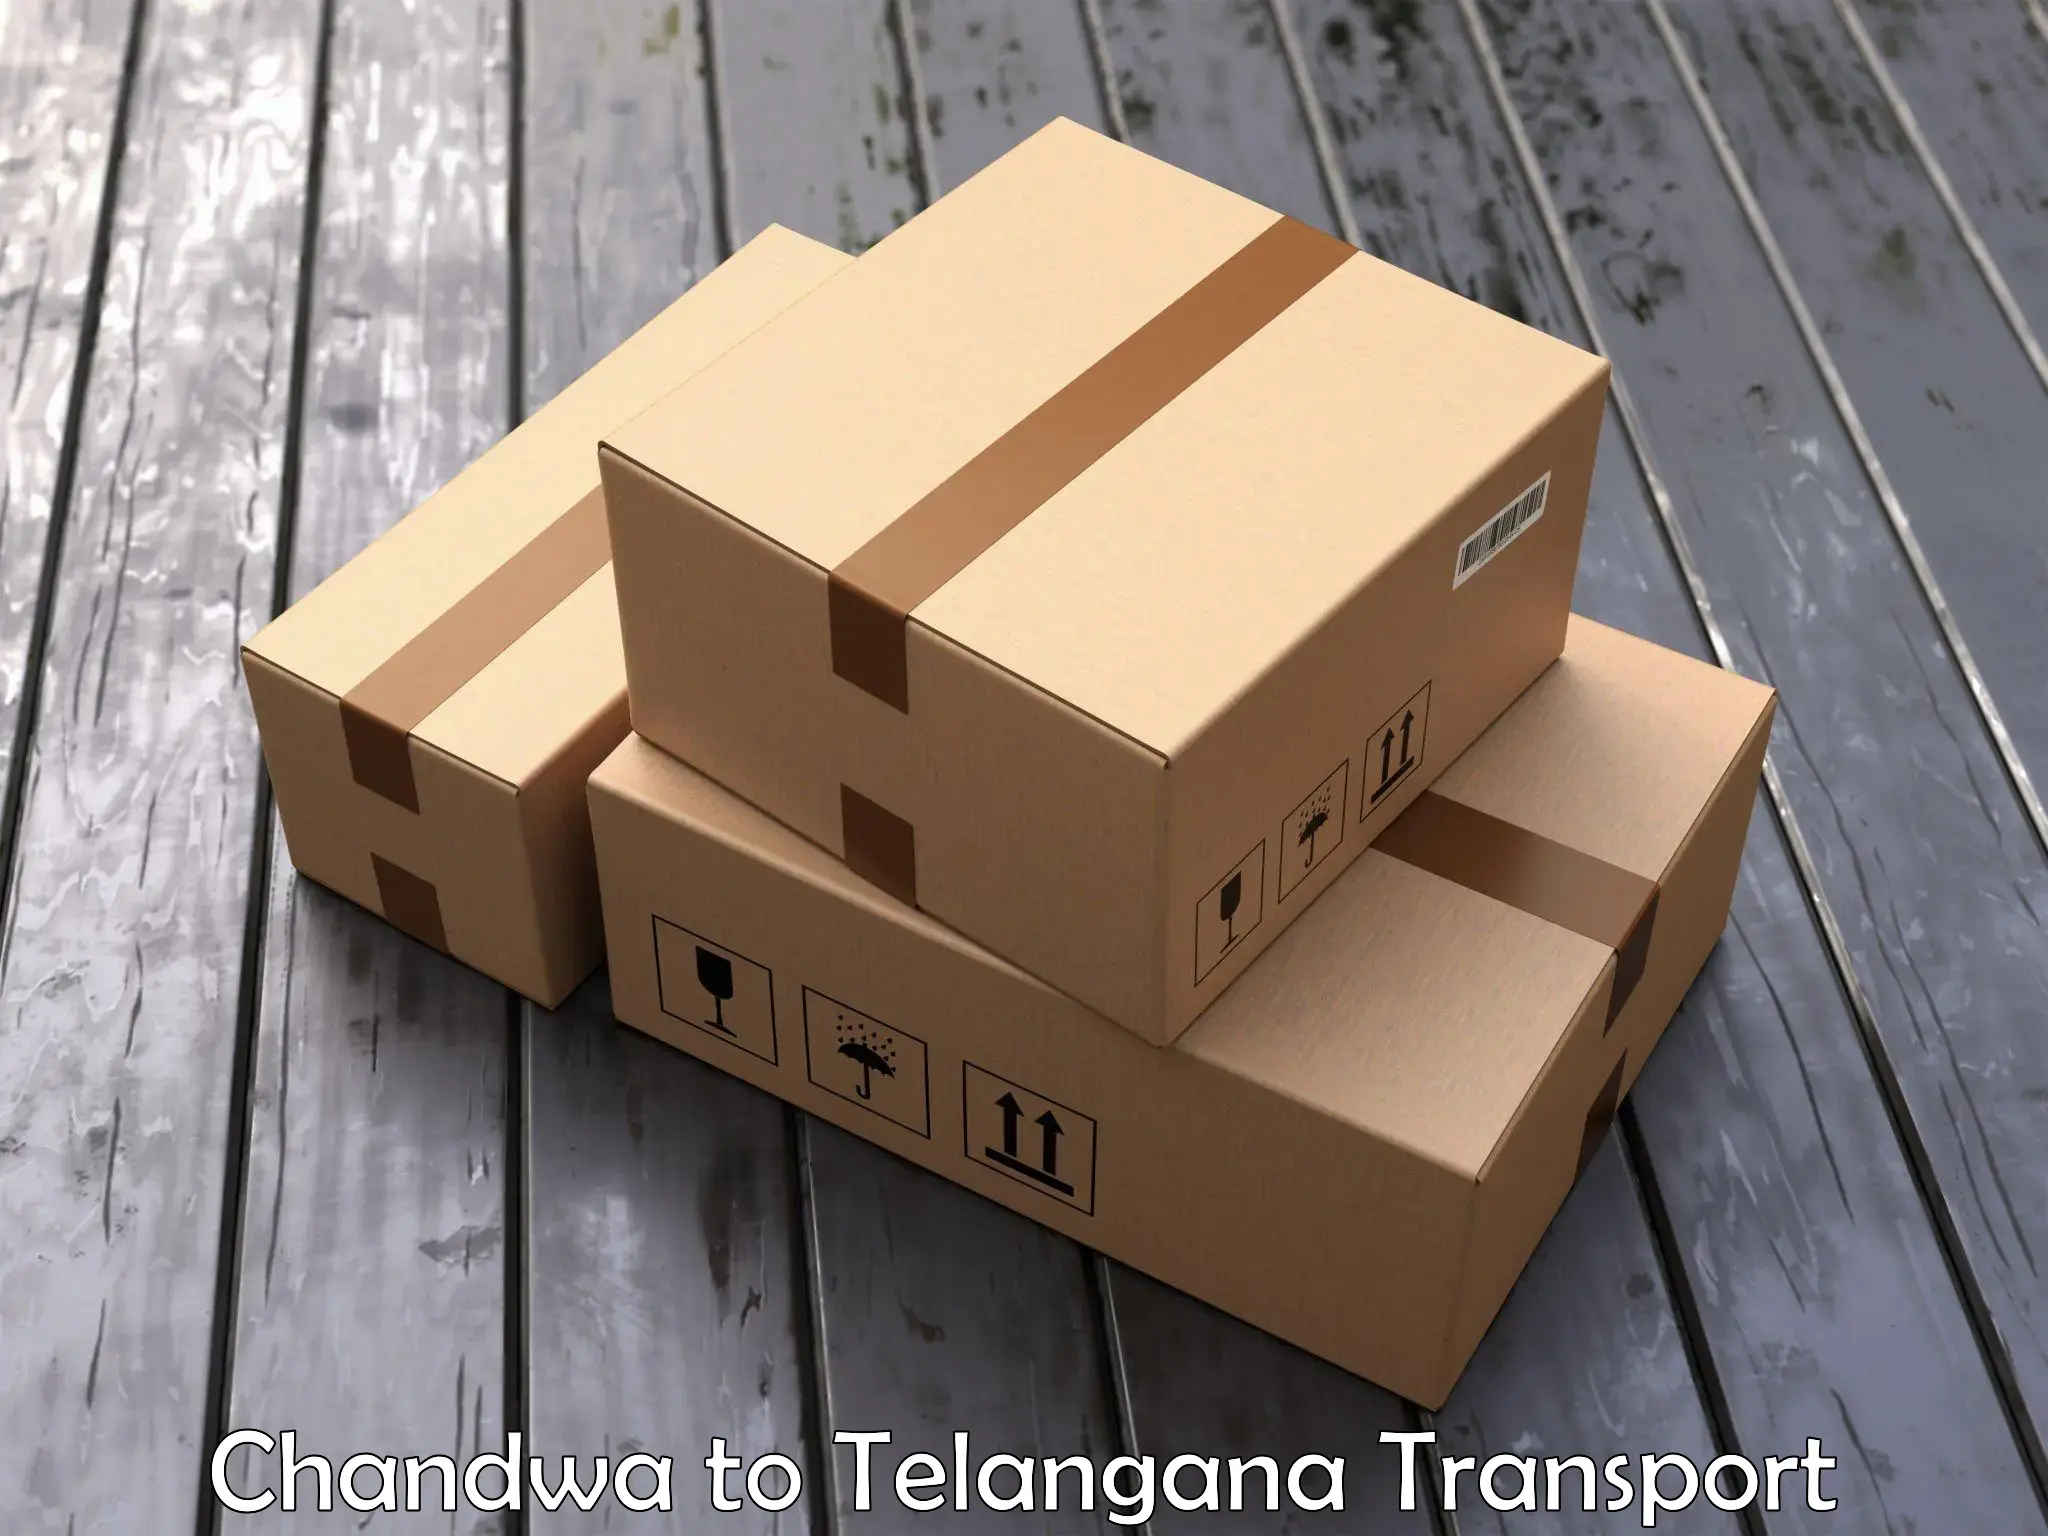 International cargo transportation services Chandwa to Yellandu